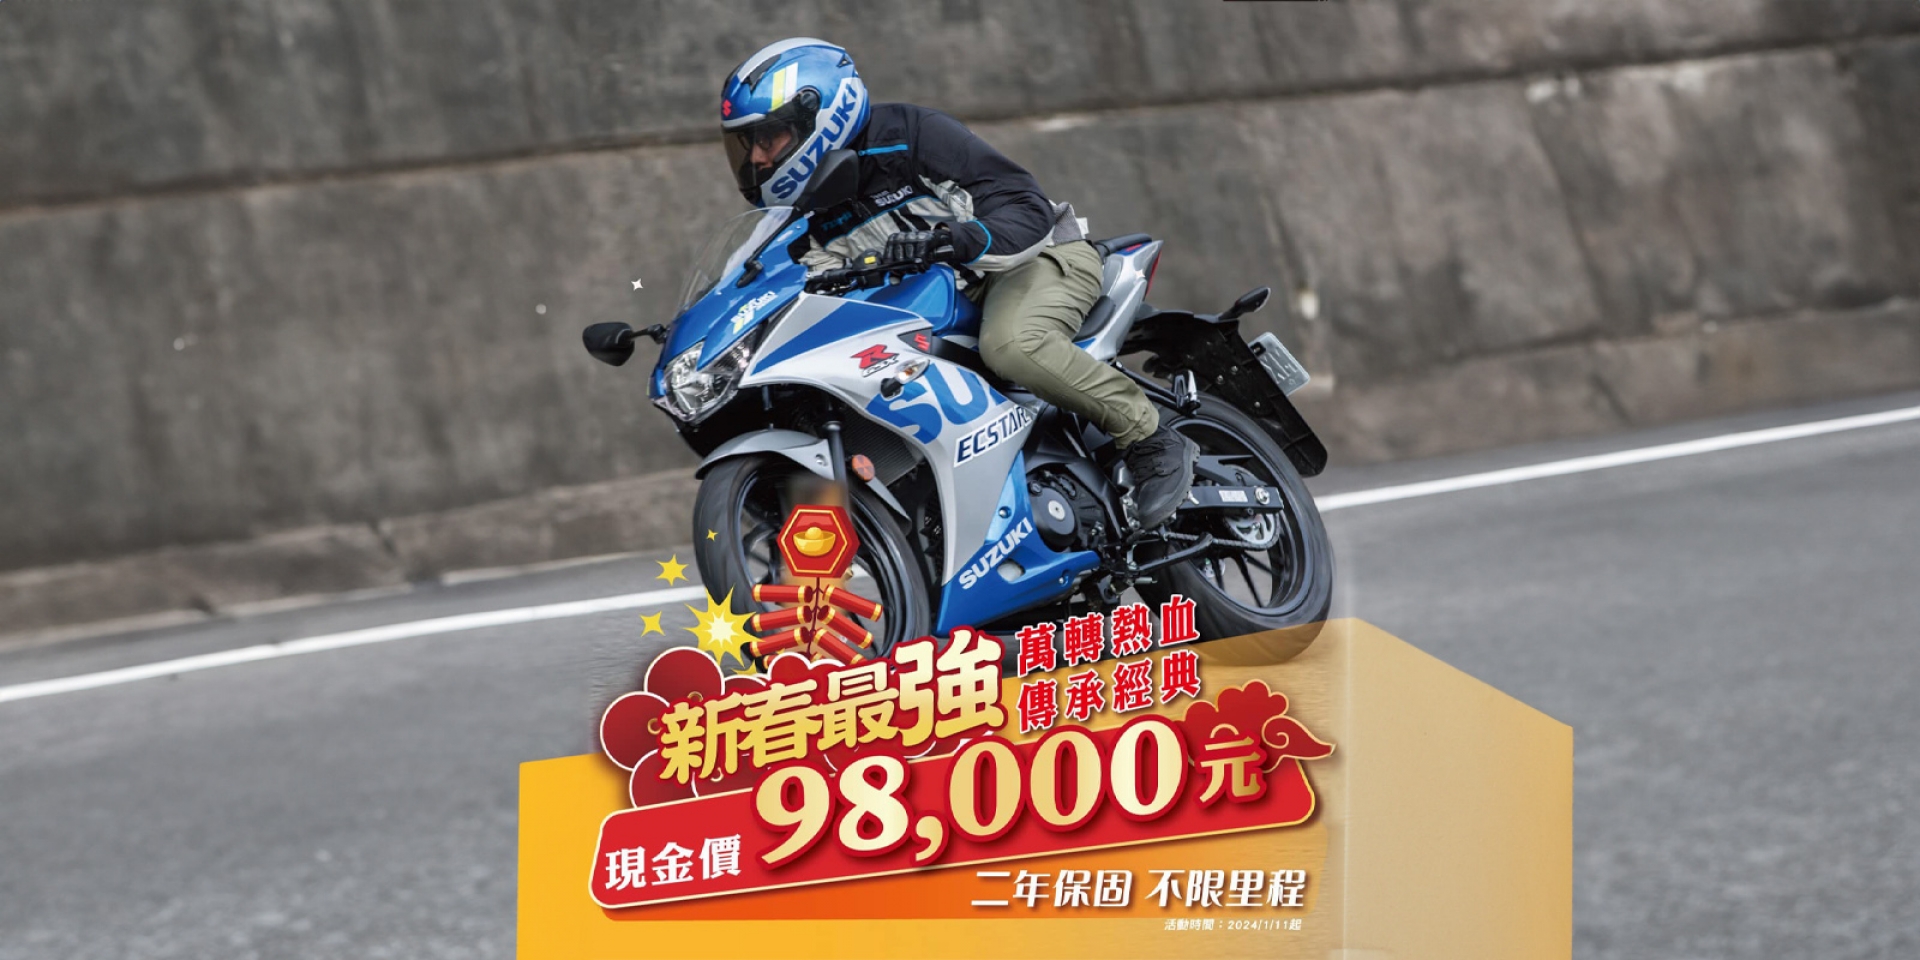 現金優惠免十萬！Suzuki GSX-R150 新春超殺價98,000元